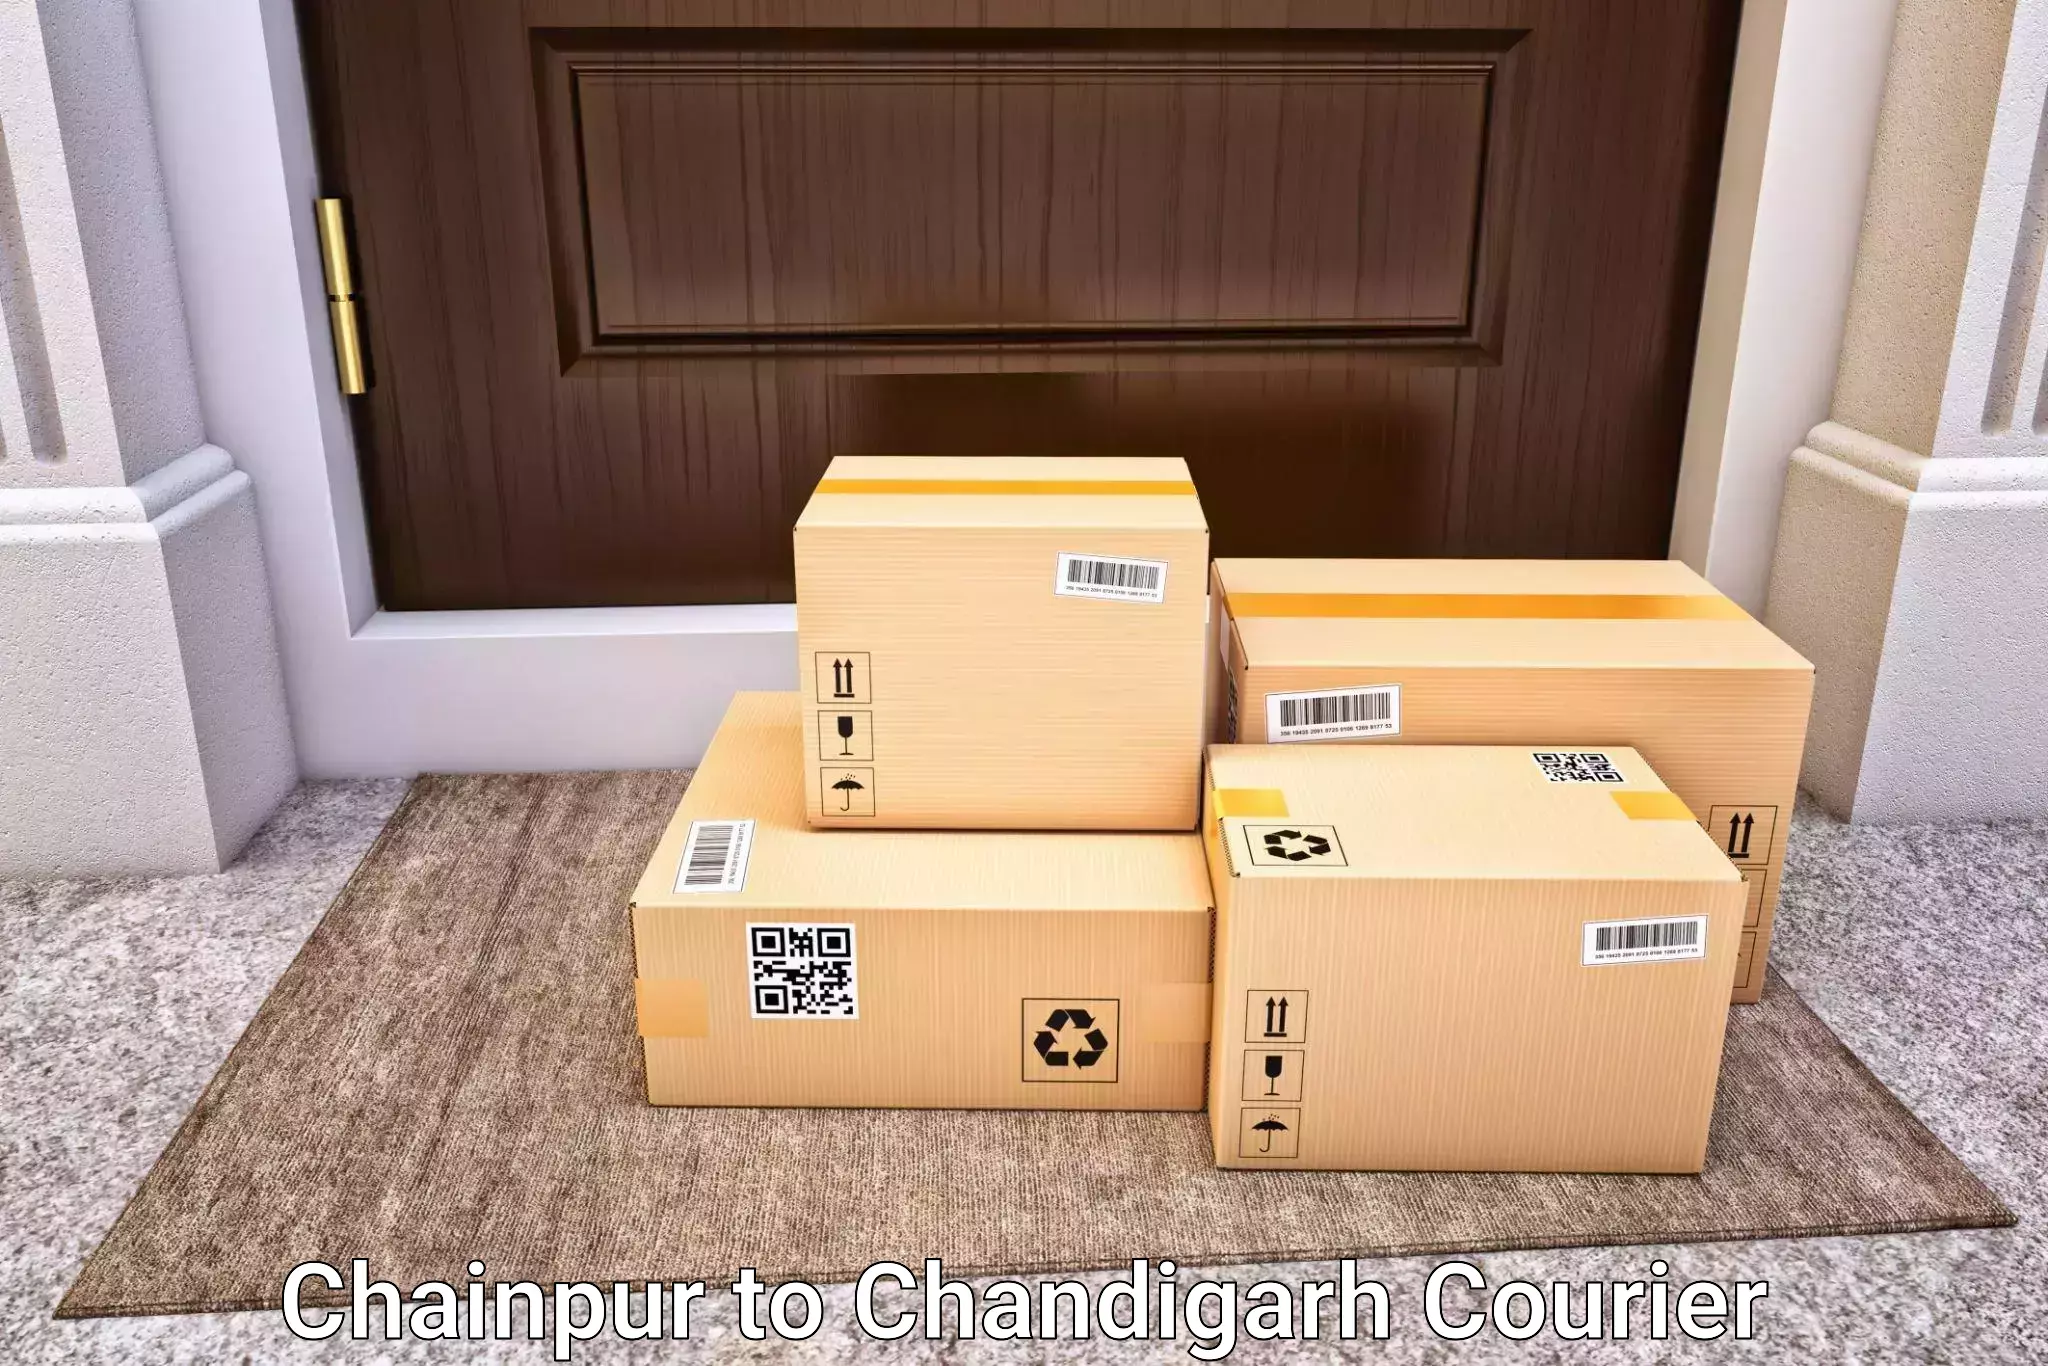 Door-to-door baggage service Chainpur to Chandigarh